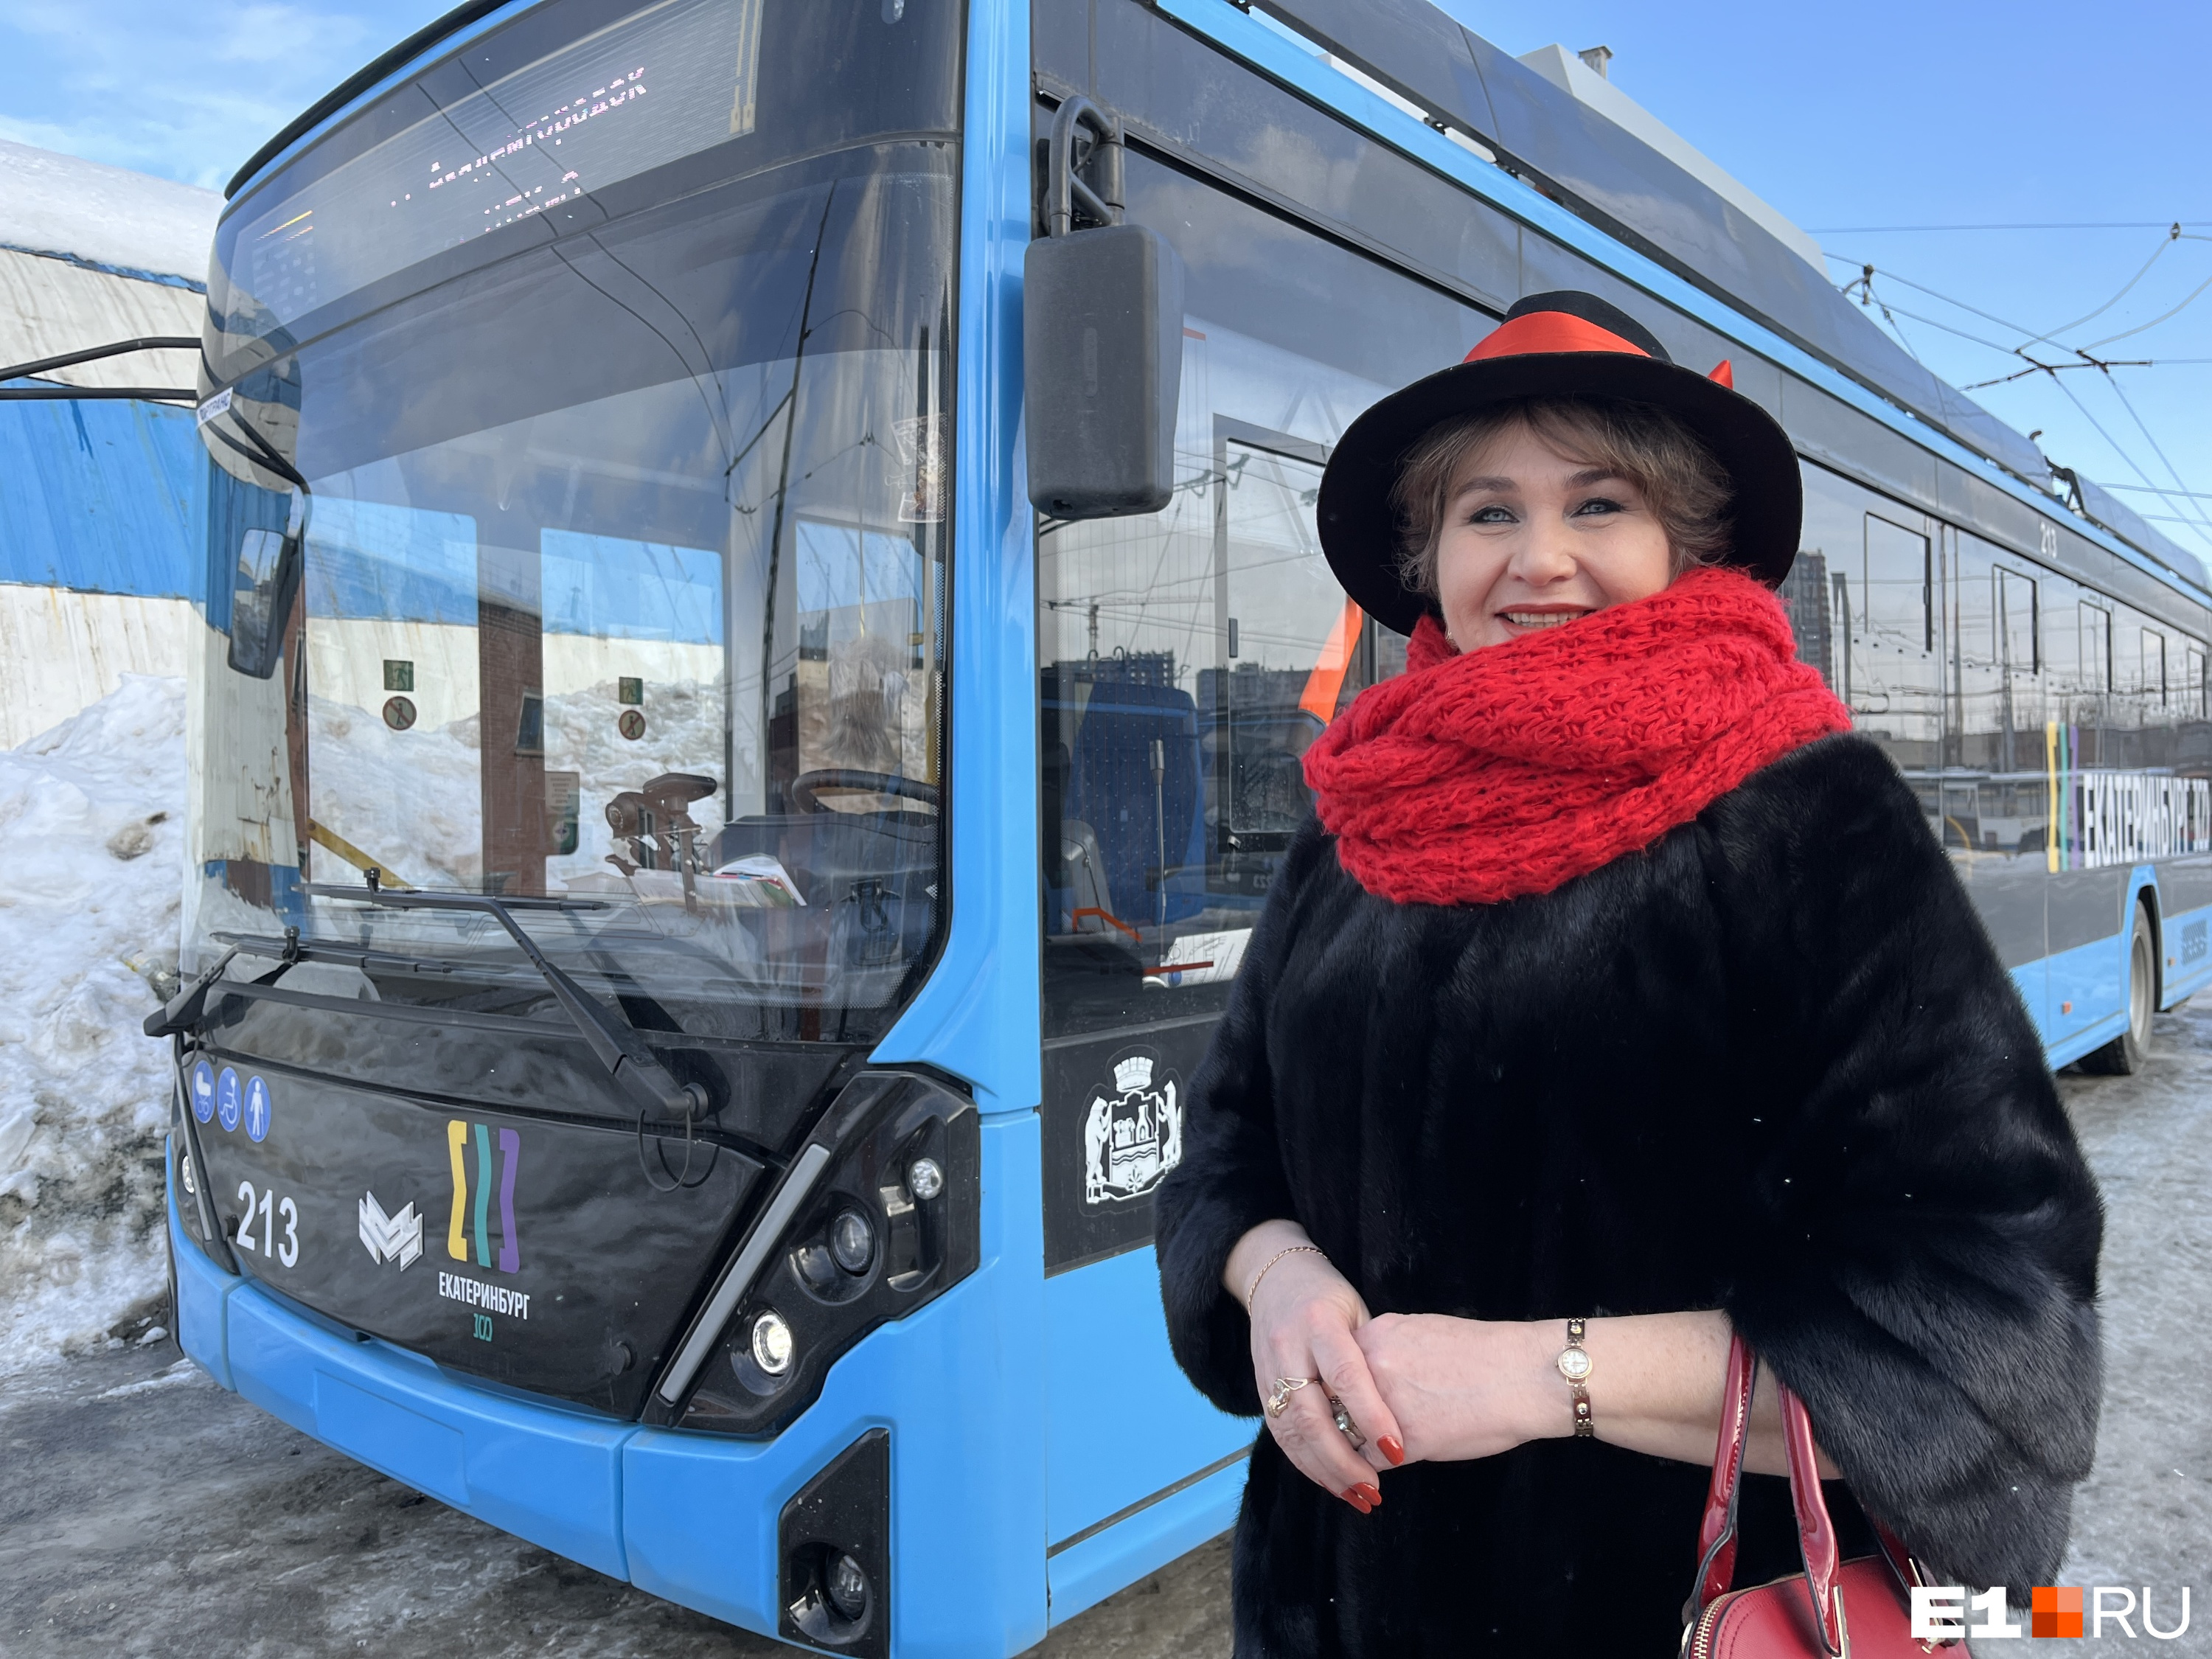 «Меня весь город видит!» В Екатеринбурге дама в элегантной шляпе и на каблуках рассекает на новеньком троллейбусе